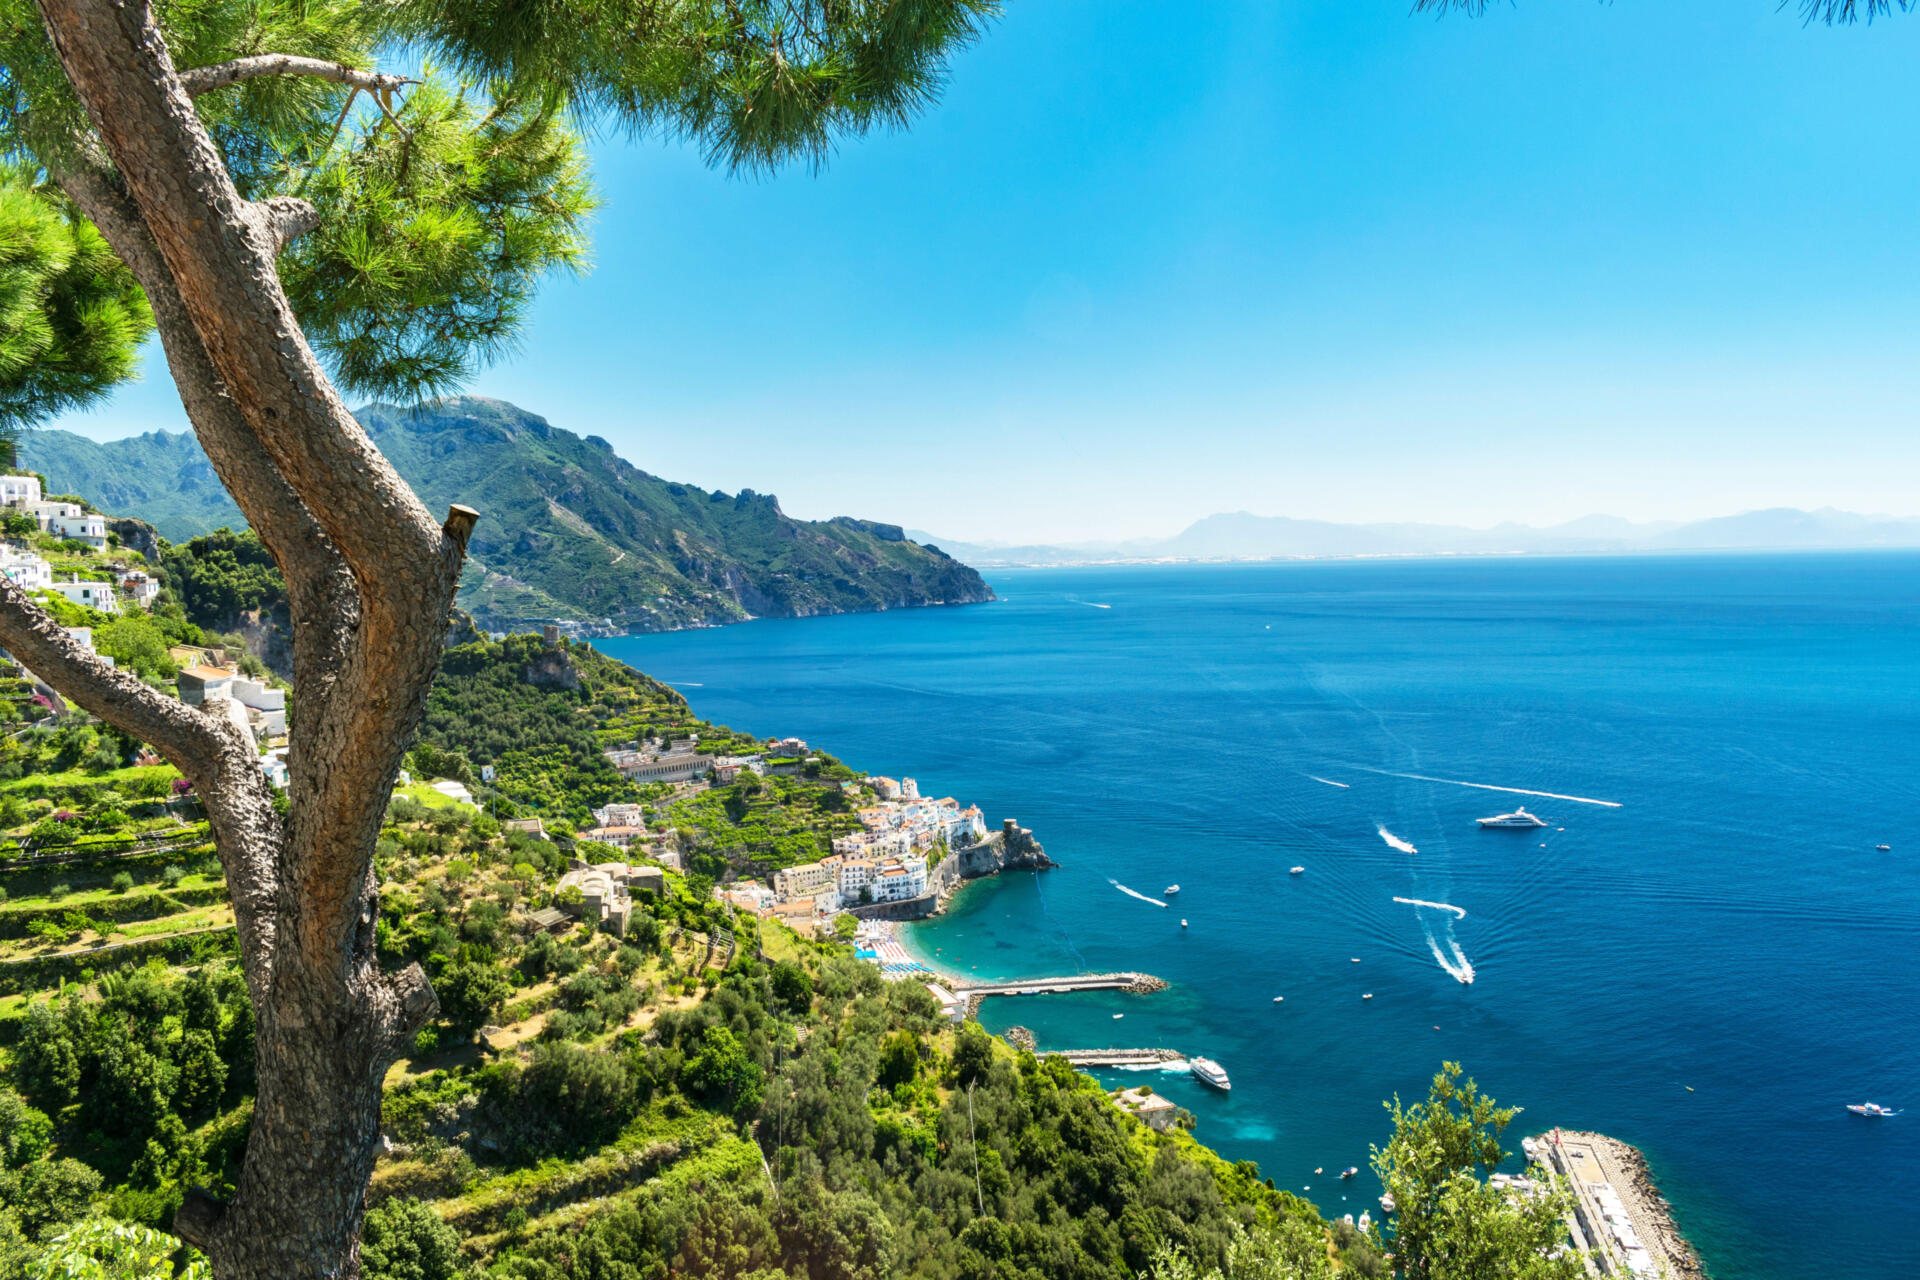 Entdecken Sie den Golf von Neapel mal von einer ganz anderen Seite! An der Amalfiküste erwarten Sie nicht nur der meisterhafte Dom von Amalfi und die zauberhafte Villa Rufolo. Sie bietet auch ursprüngliche Naturwege, die einst die einzigen Verbingungen zwischen den kleinen Dörfern an der zerklüfteten Küste waren.